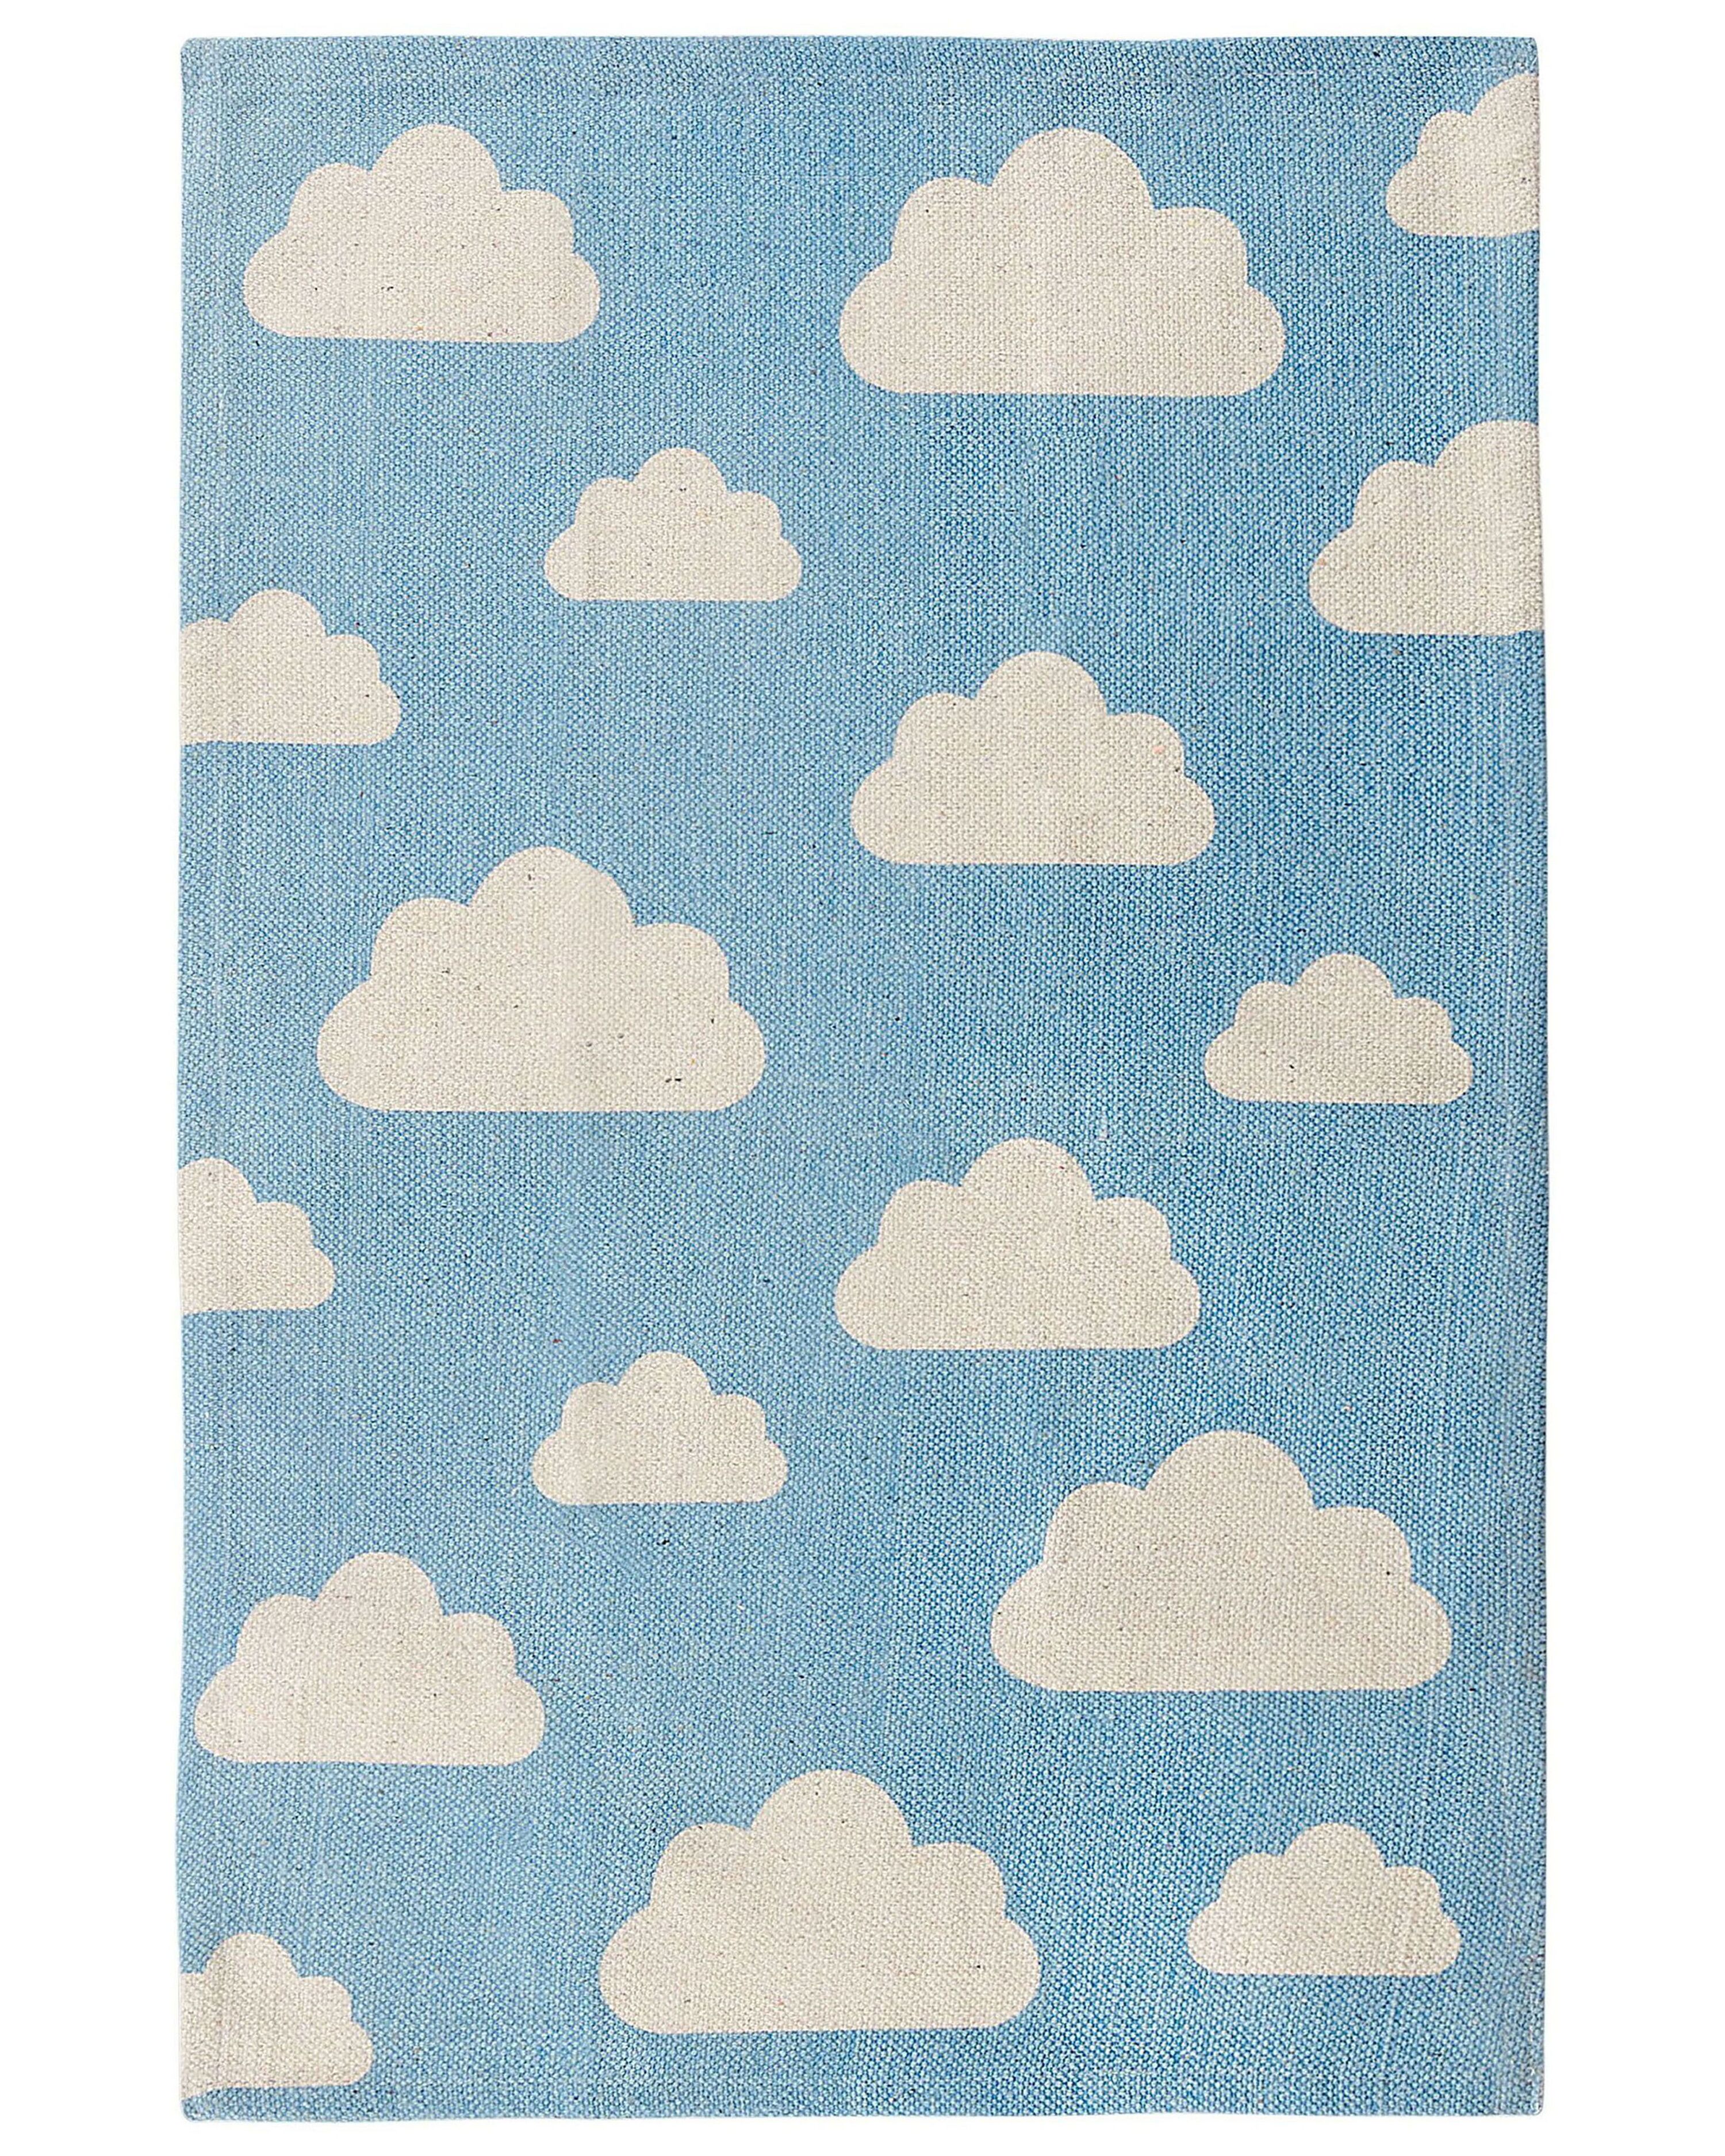 Cloudy - tapis enfant rond à motifs nuages - bleu 120 x 120 cm